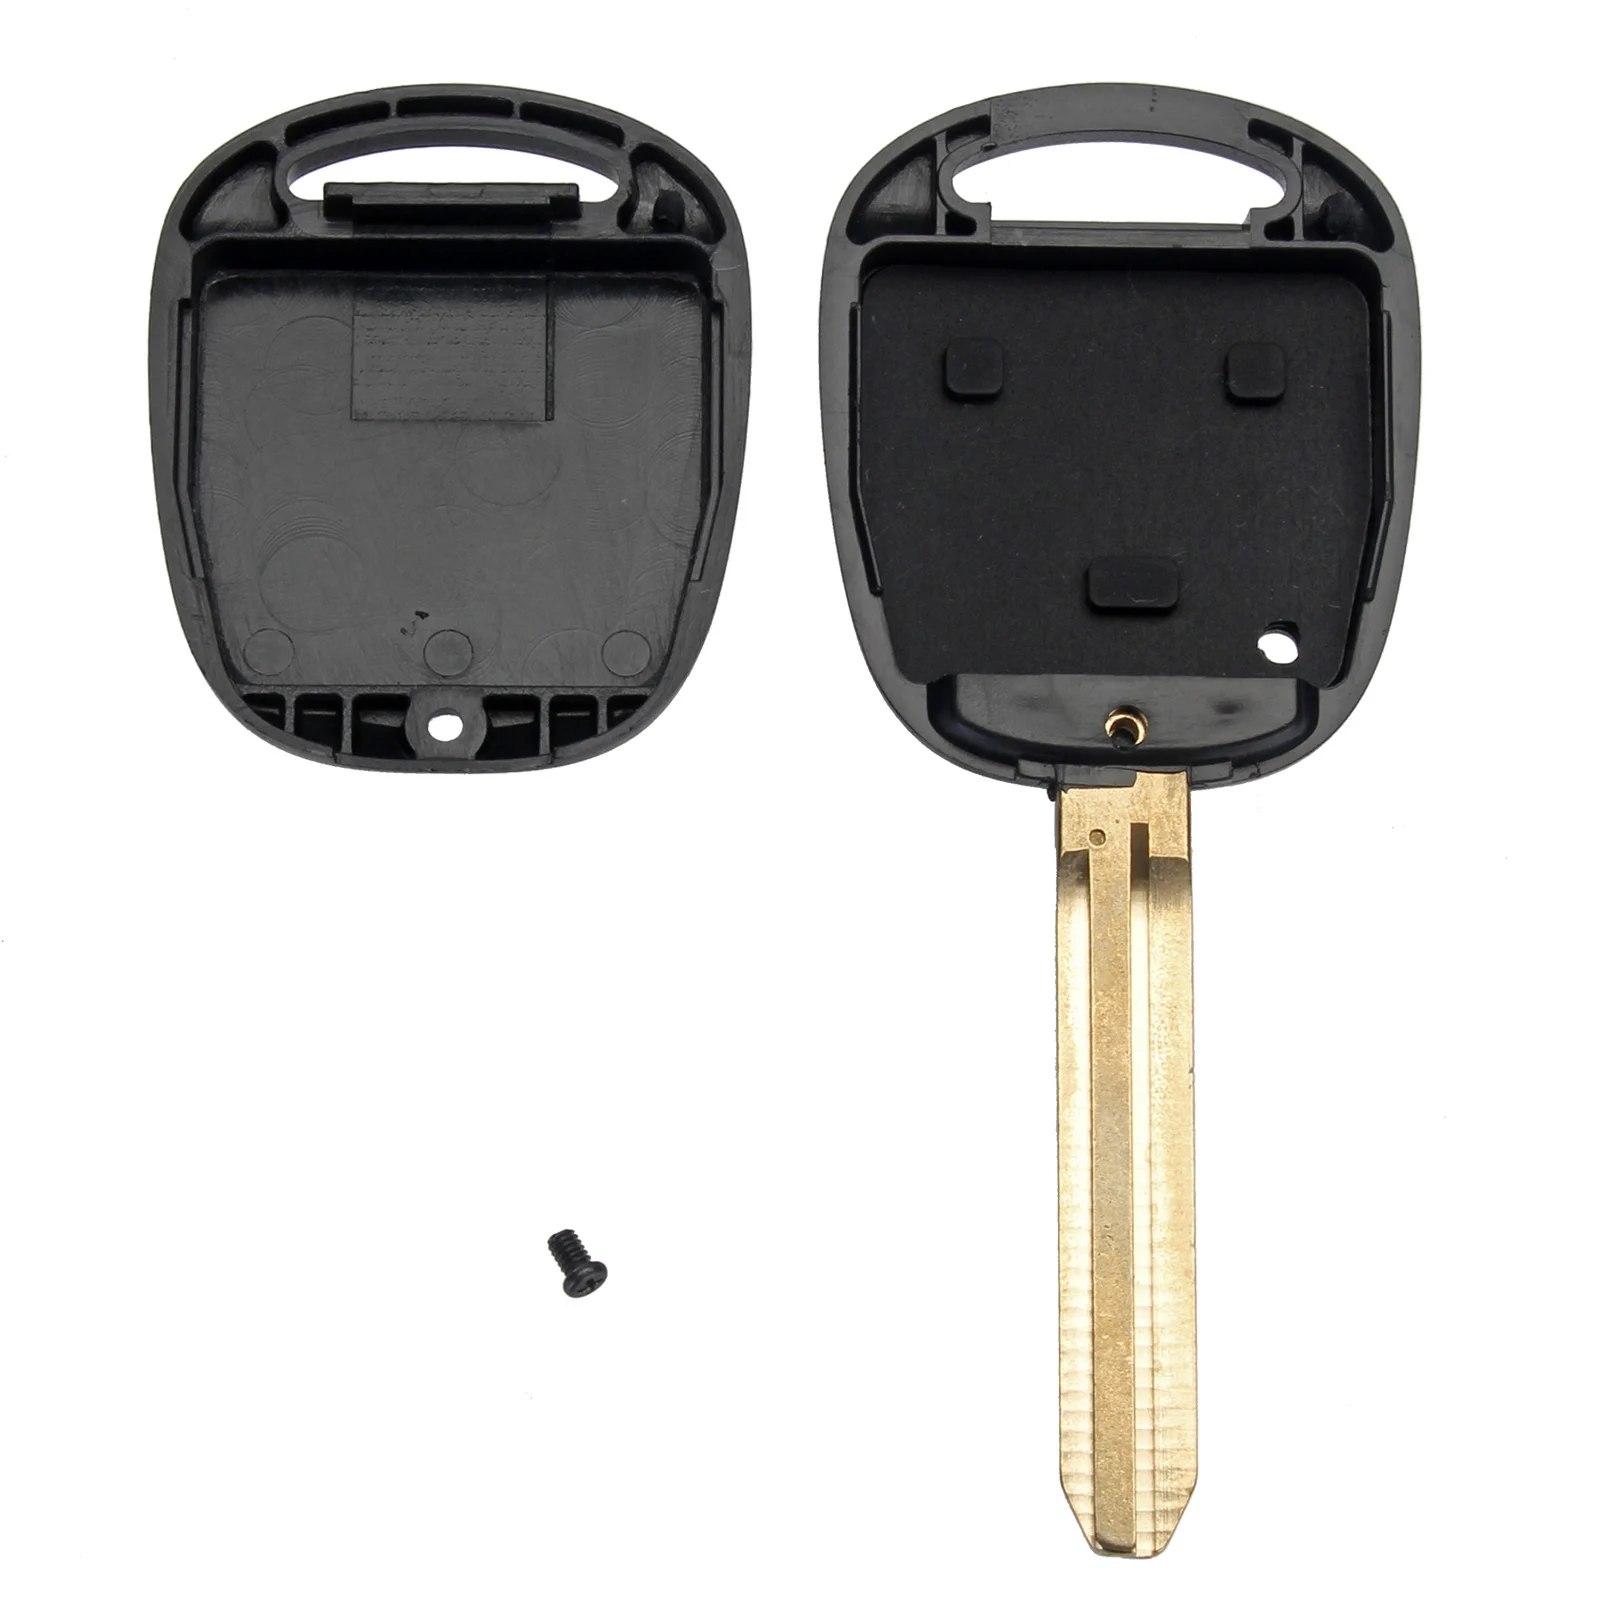 3 кнопки авто корпус автомобильного ключа дистанционного управления чехол Брелок с резиновой накладкой Замена для TOYOTA Land Cruiser Camry Corolla FJ Previa Rav4 D10